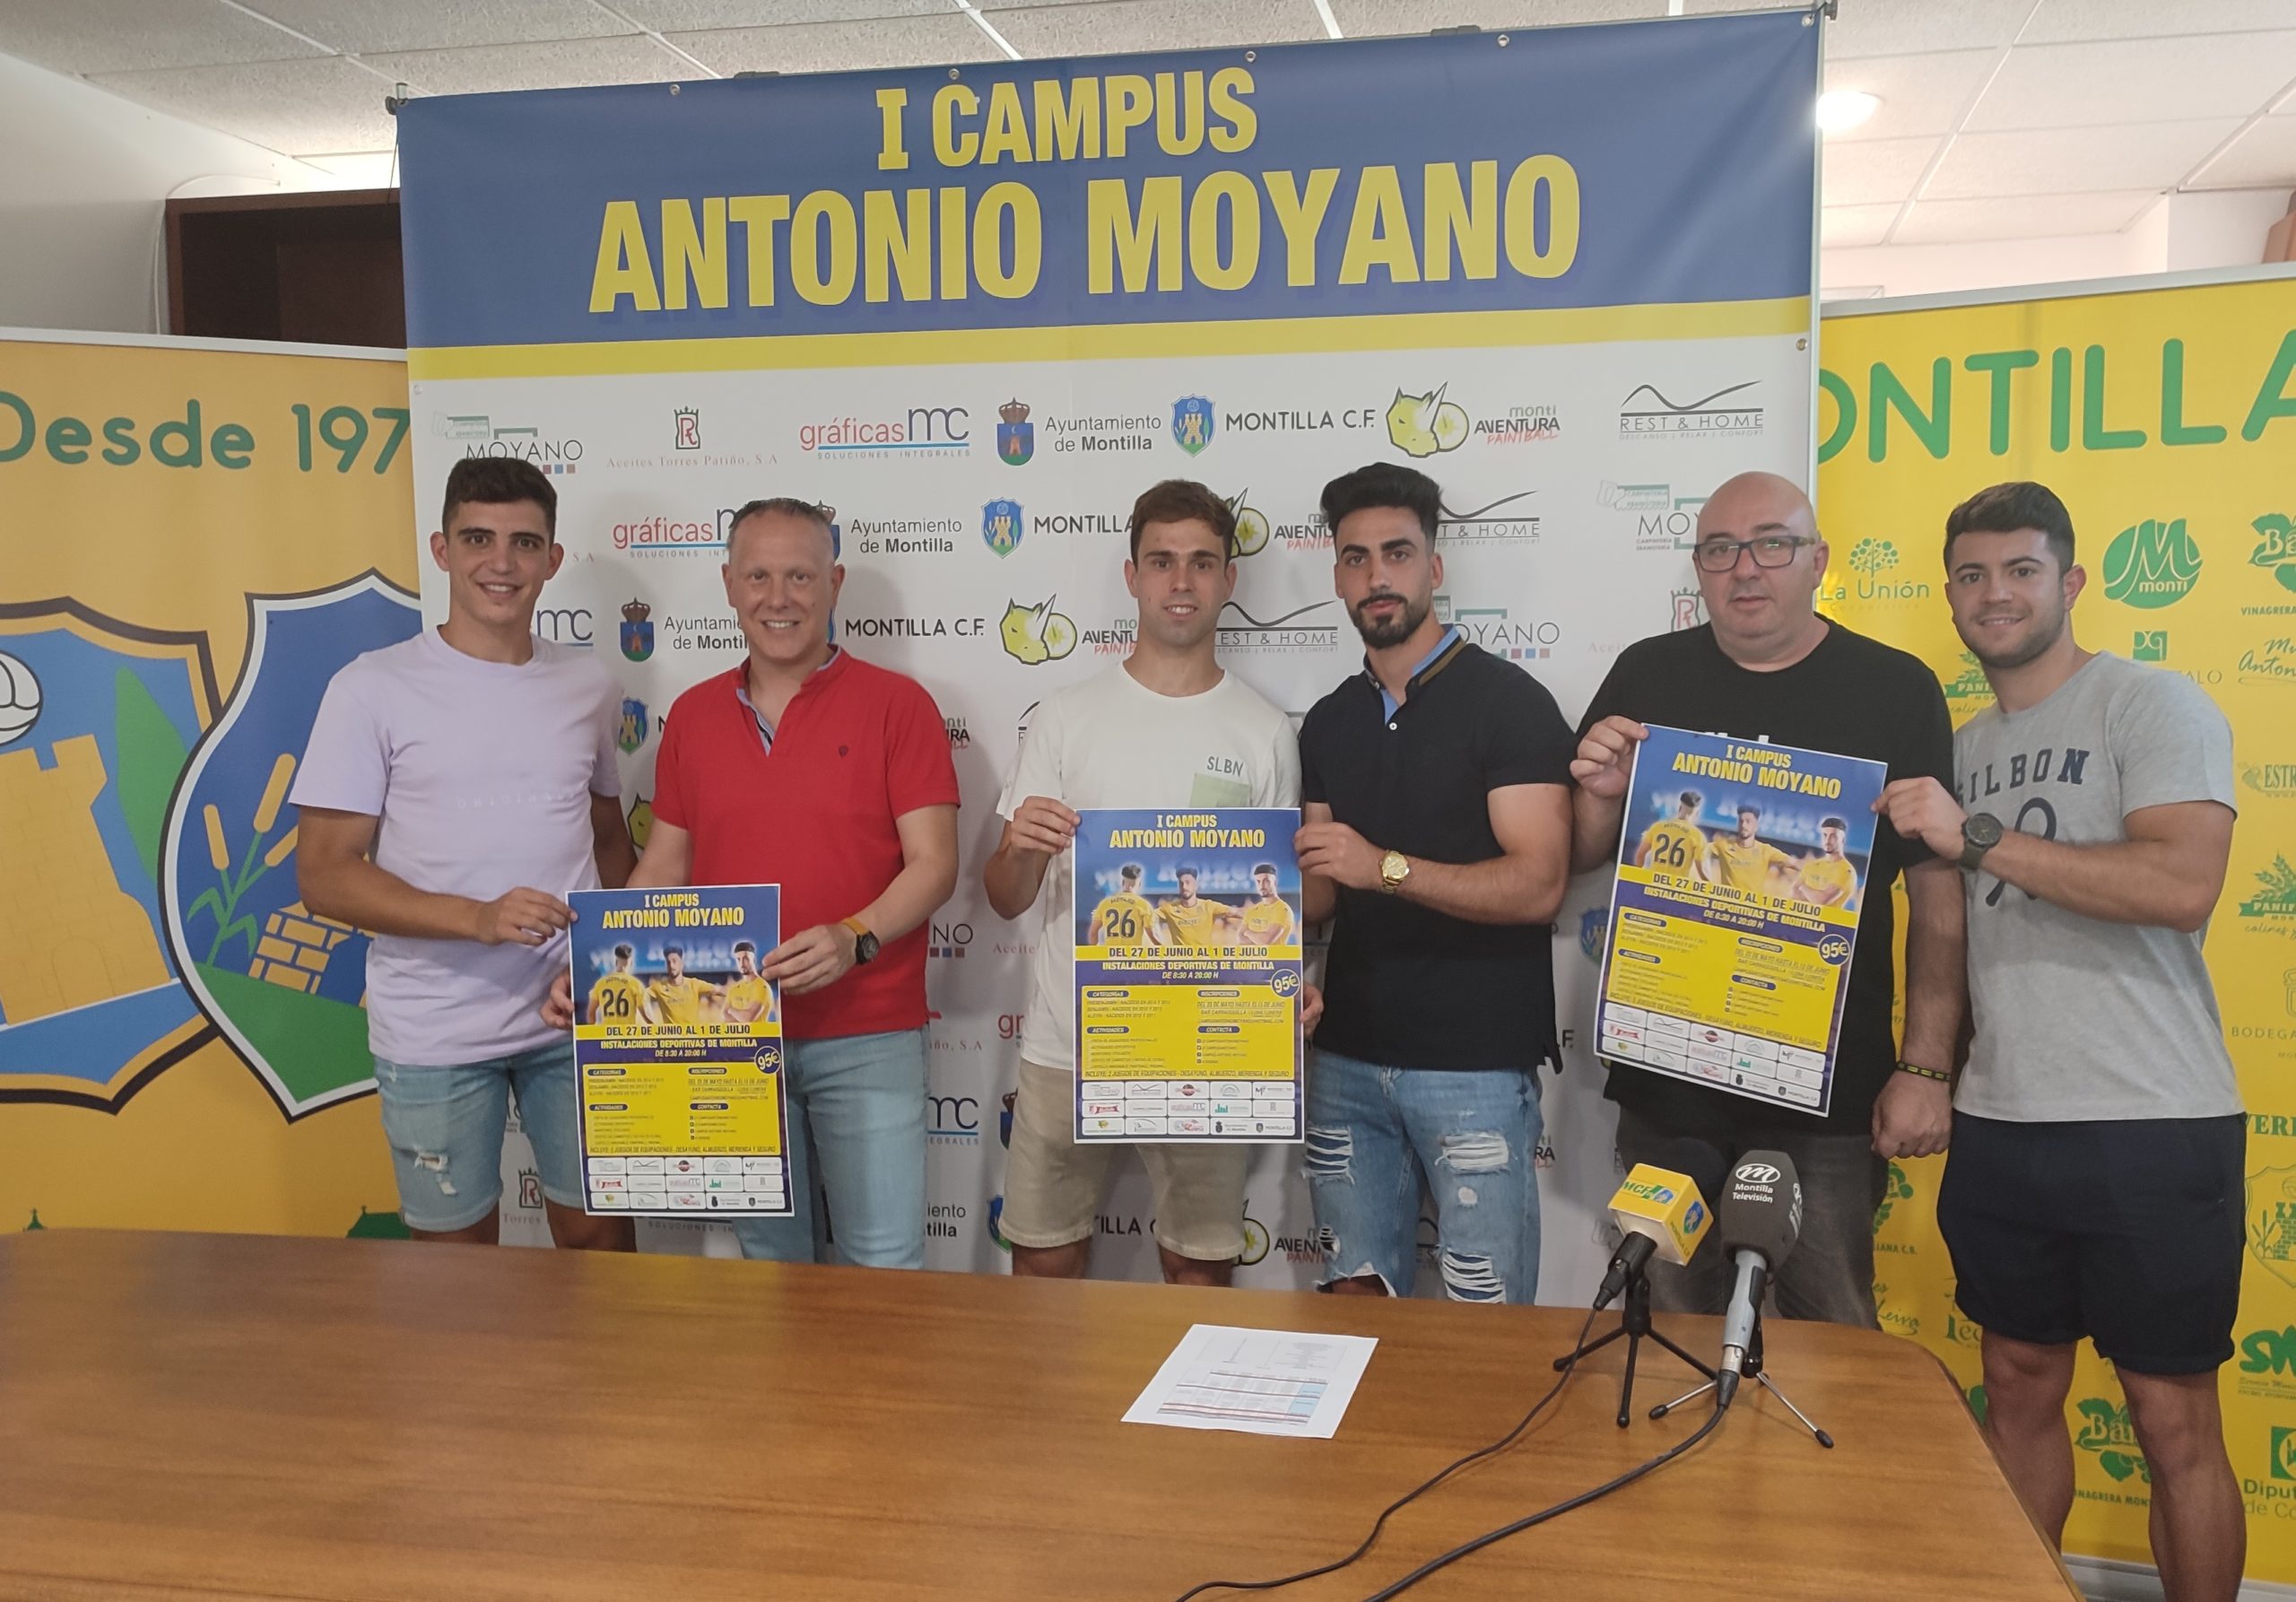 Presentación del I Campus Antonio Moyano